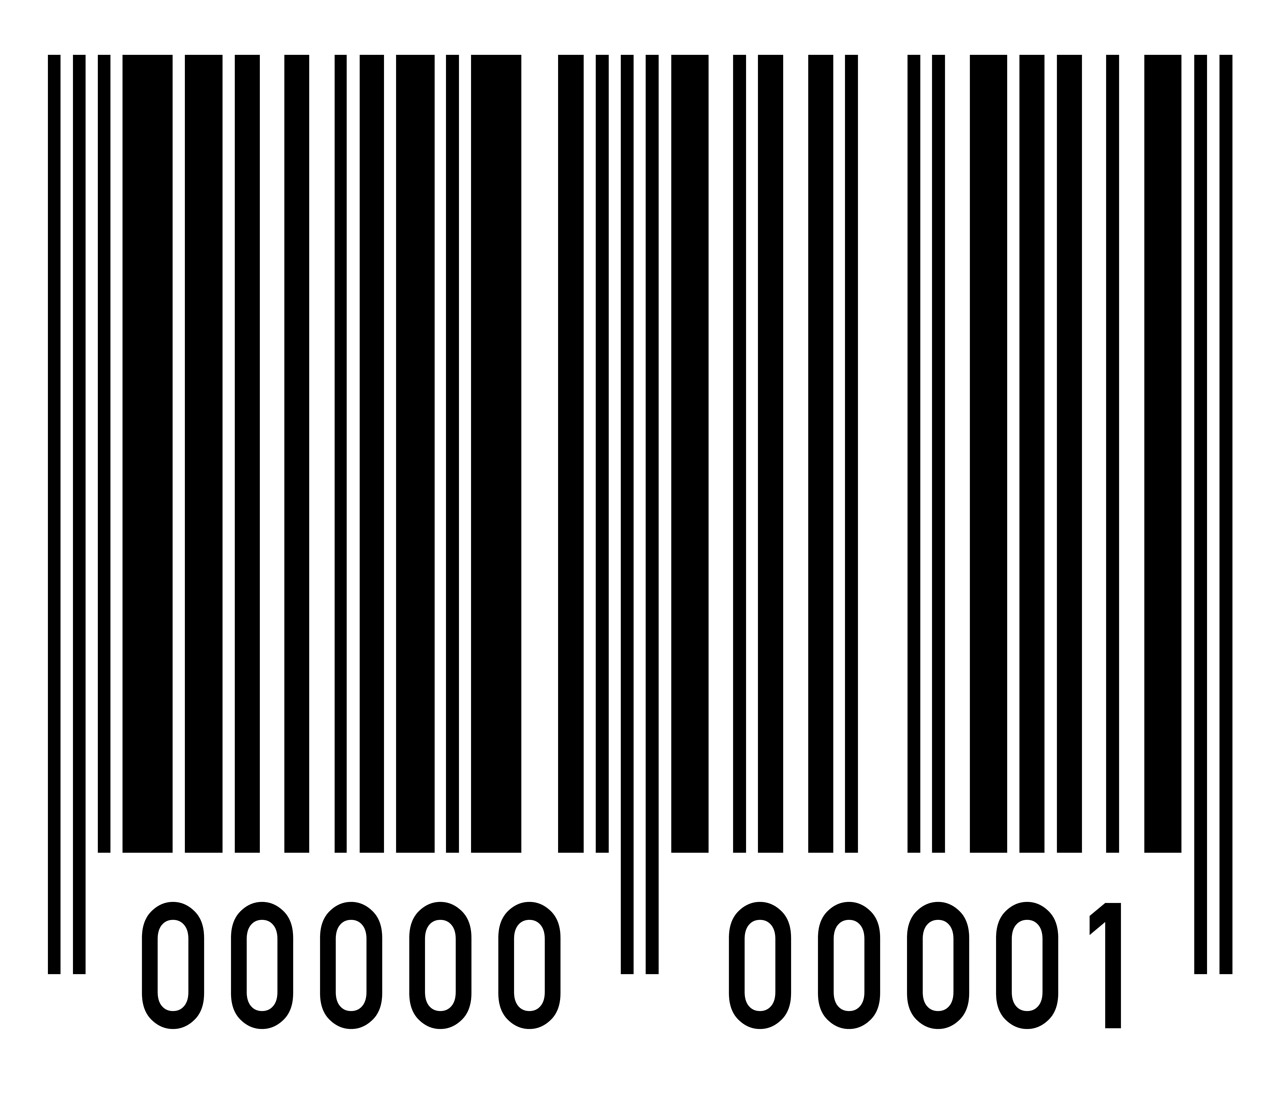 upc barcode gen